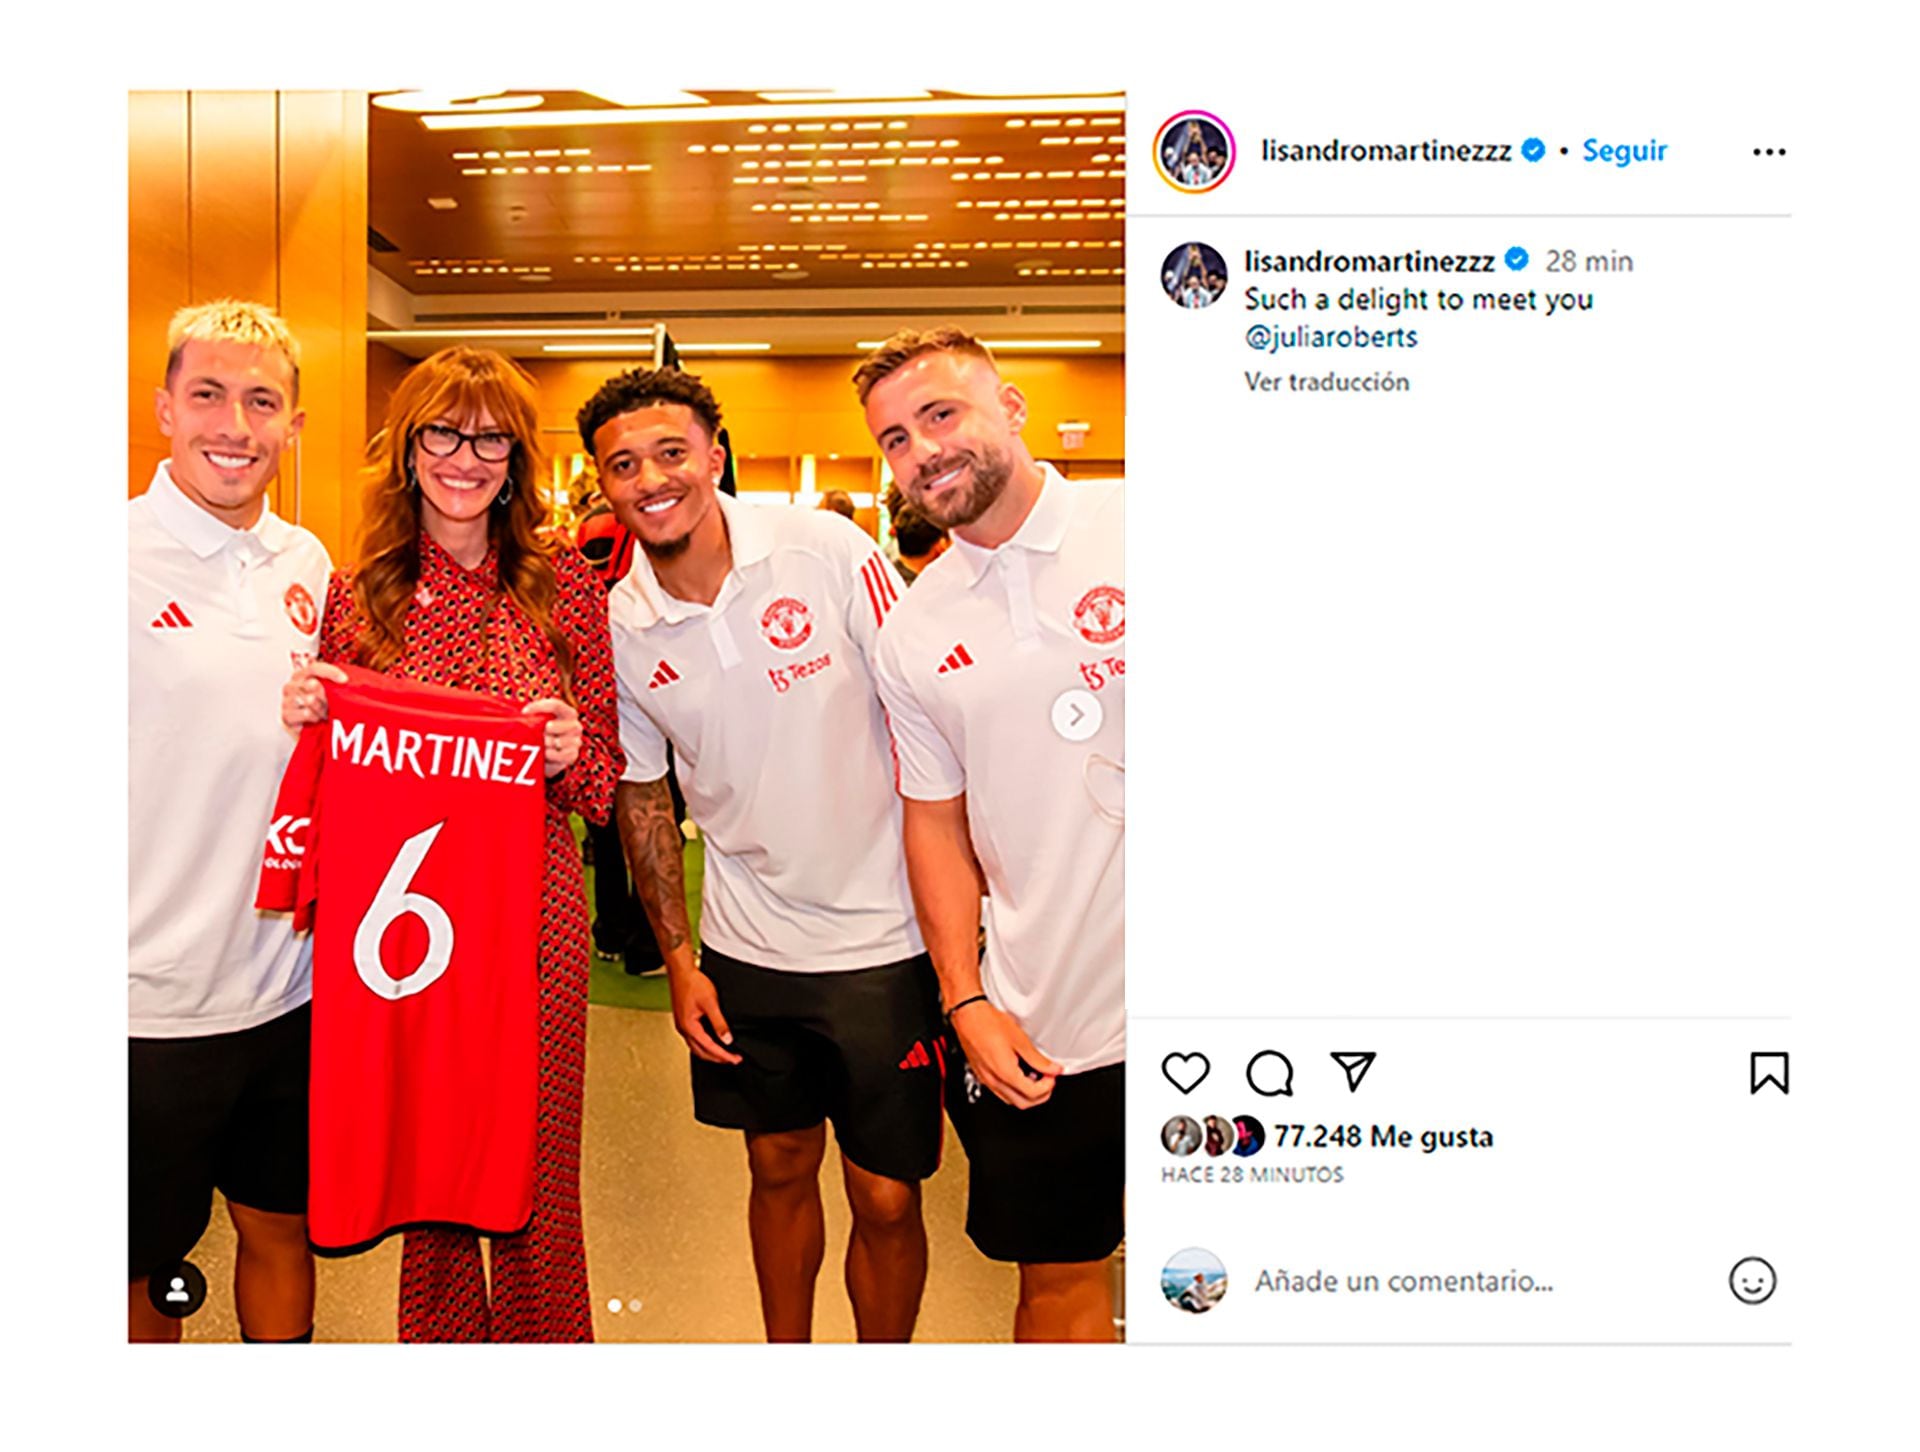 El posteo de Lisandro Martínez tras la visita de Julia Roberts al plantel de Manchester United (@ManUtd)